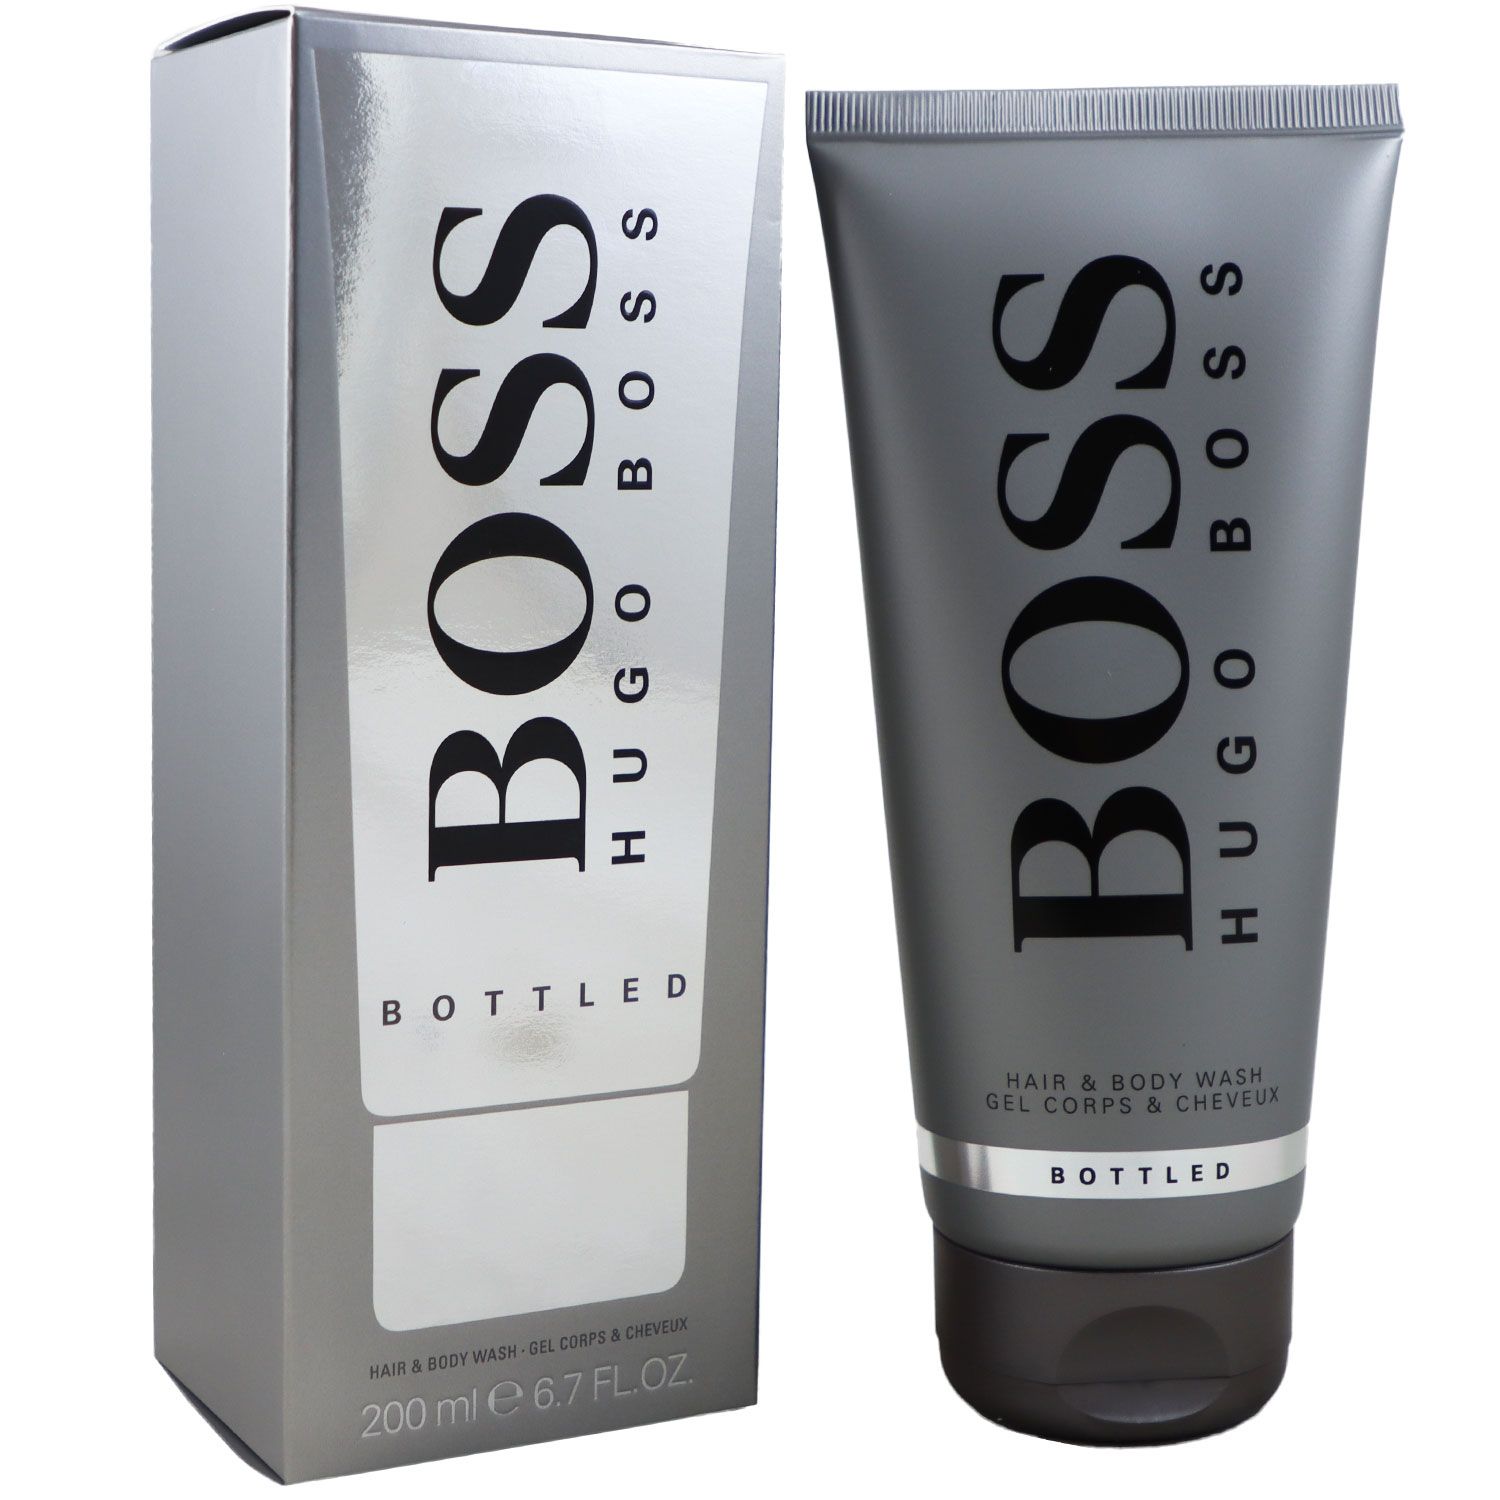 Hugo Boss Boss Bottled 200 ml Showergel Duschgel bei Riemax